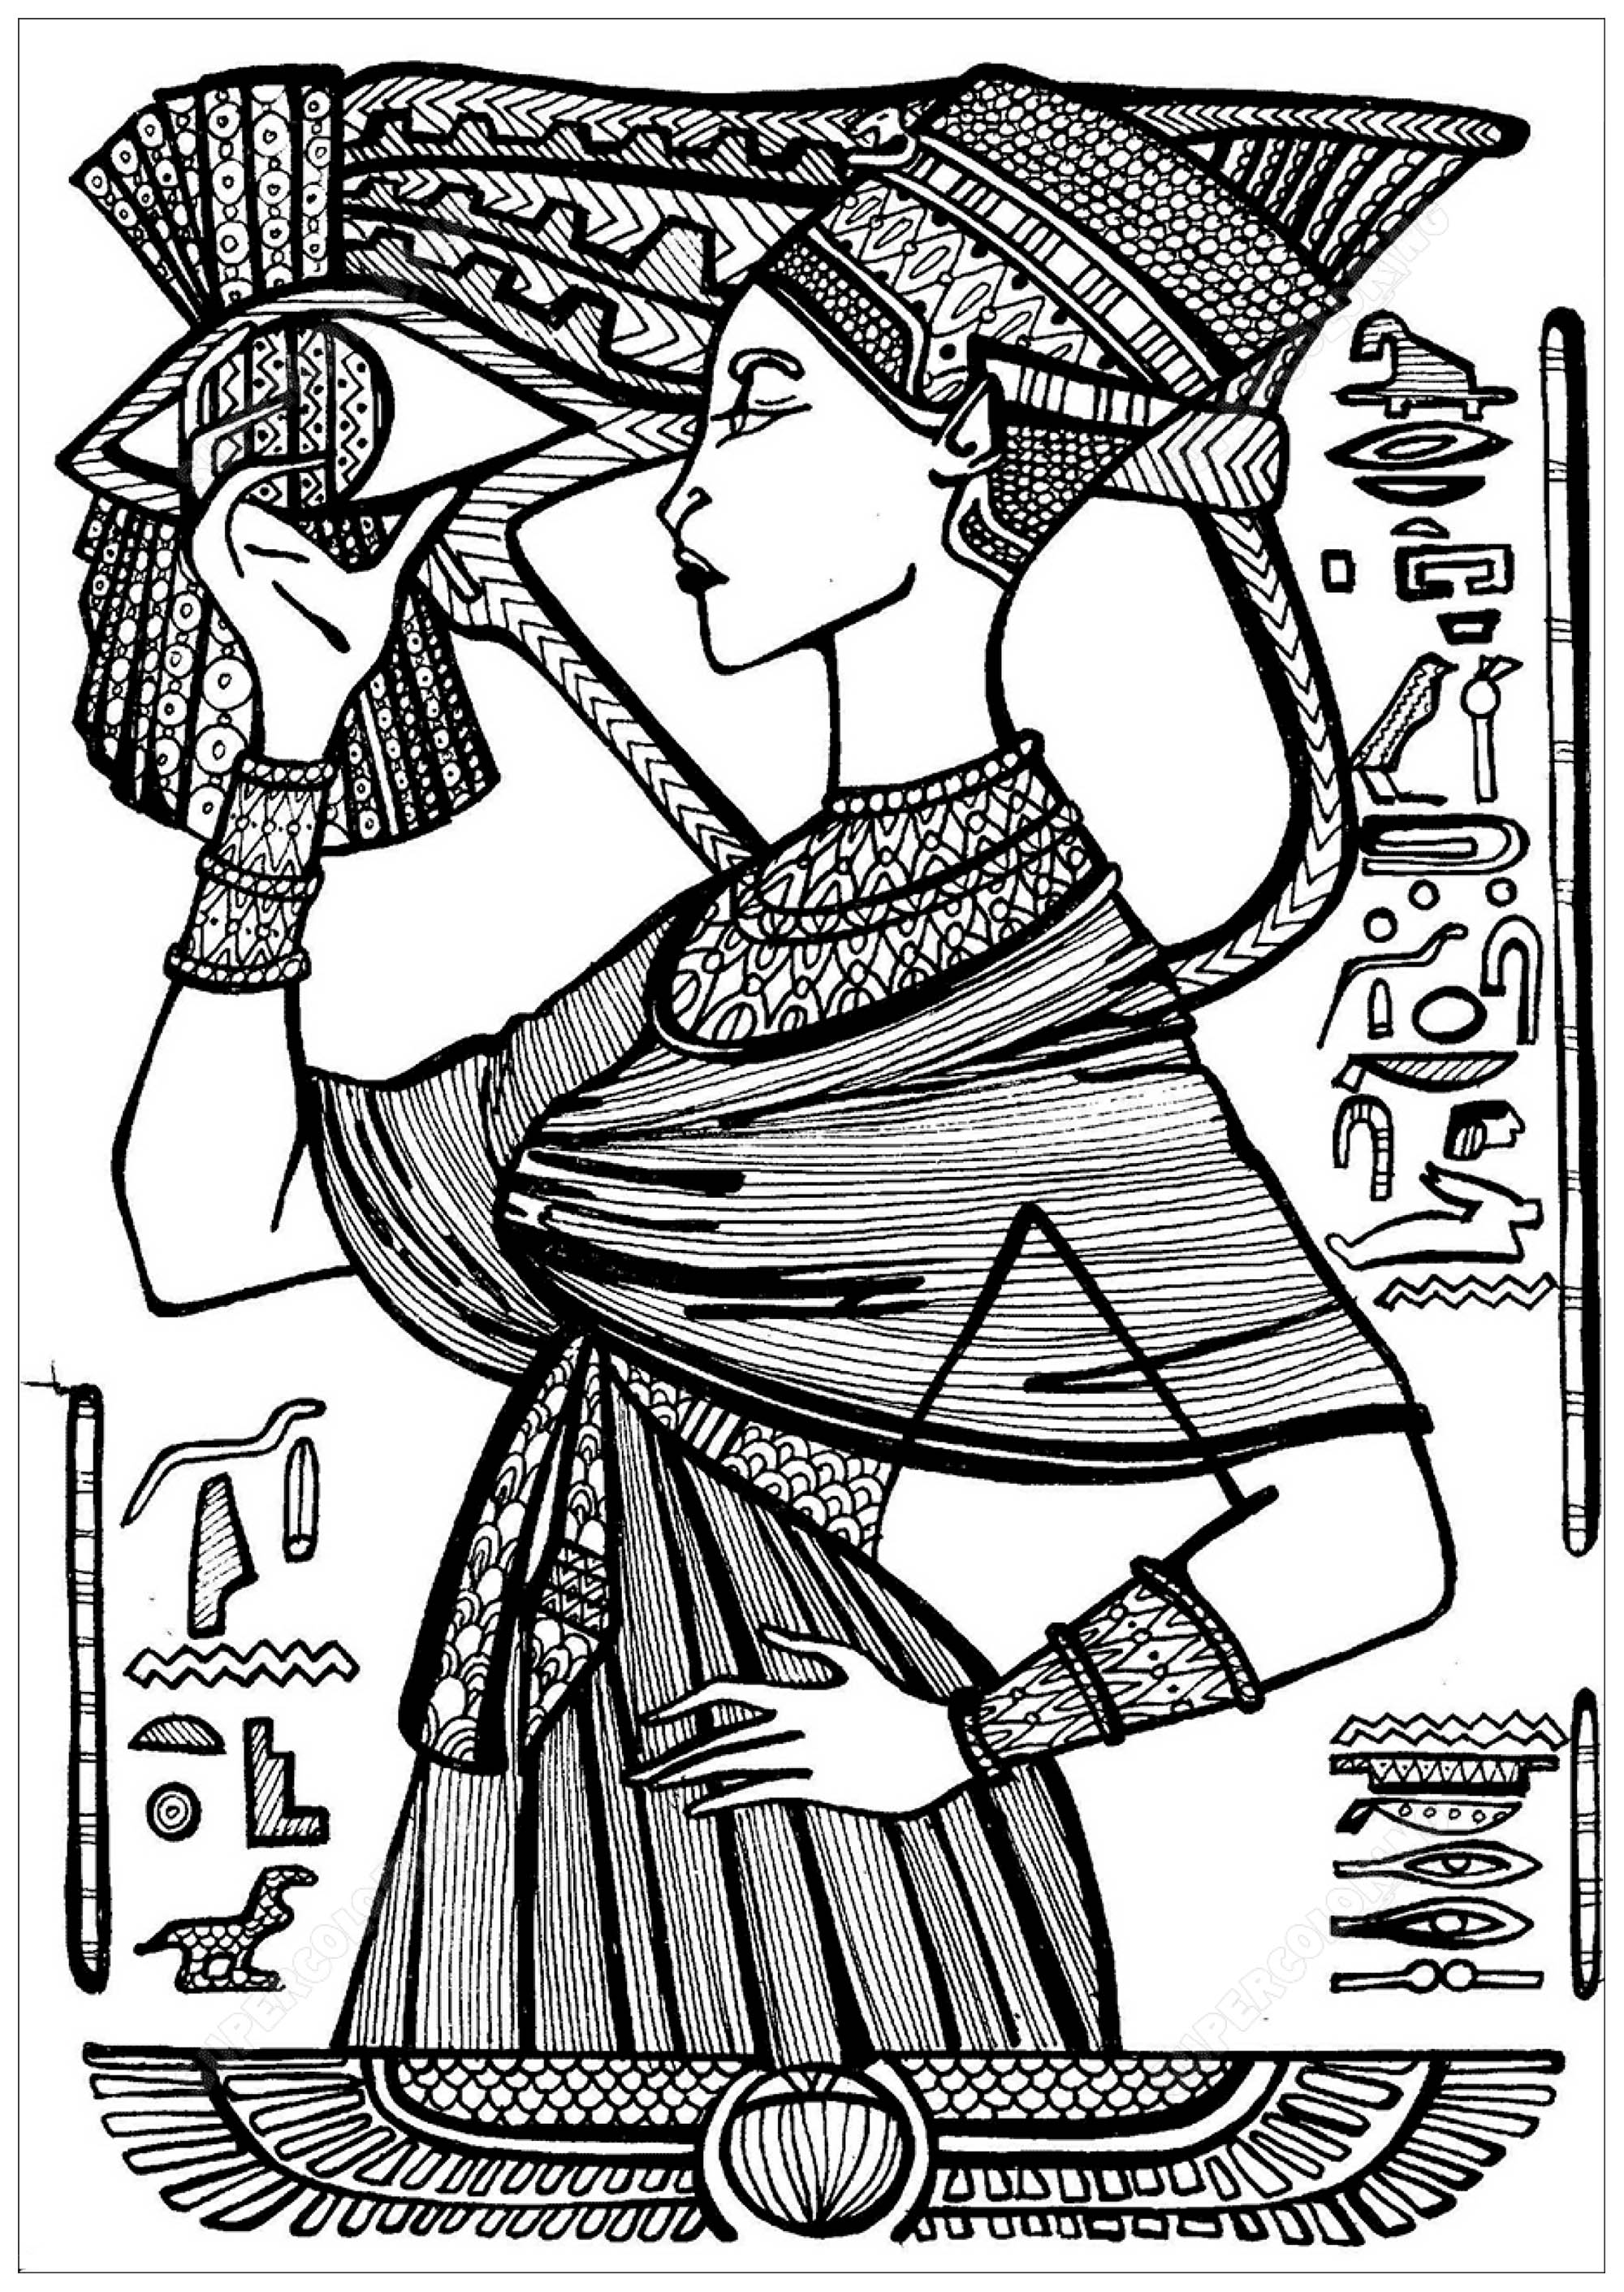 Cleópatra, rainha do Egipto